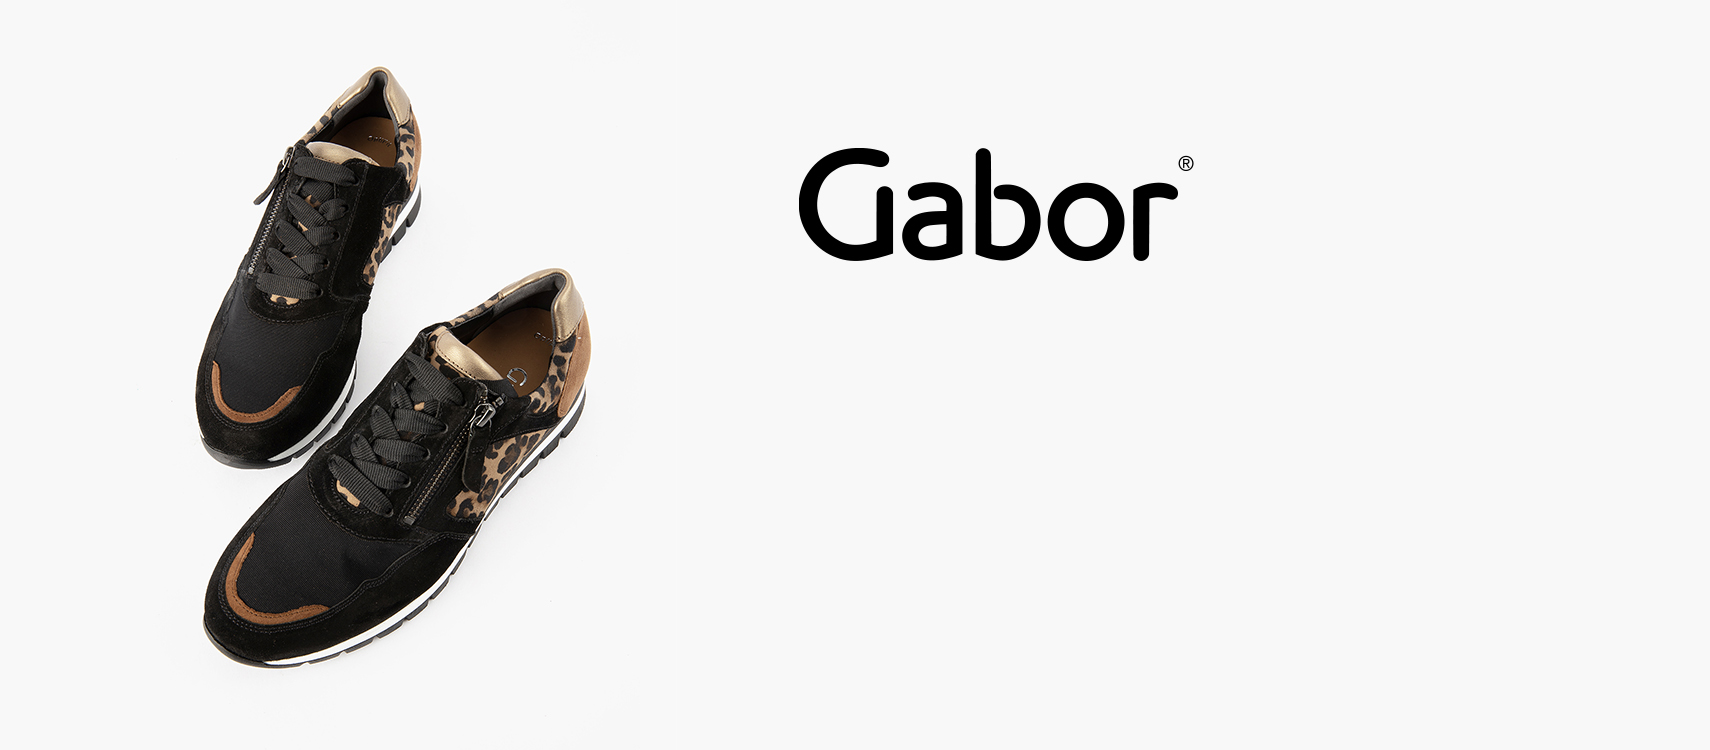 gabor shoes sale